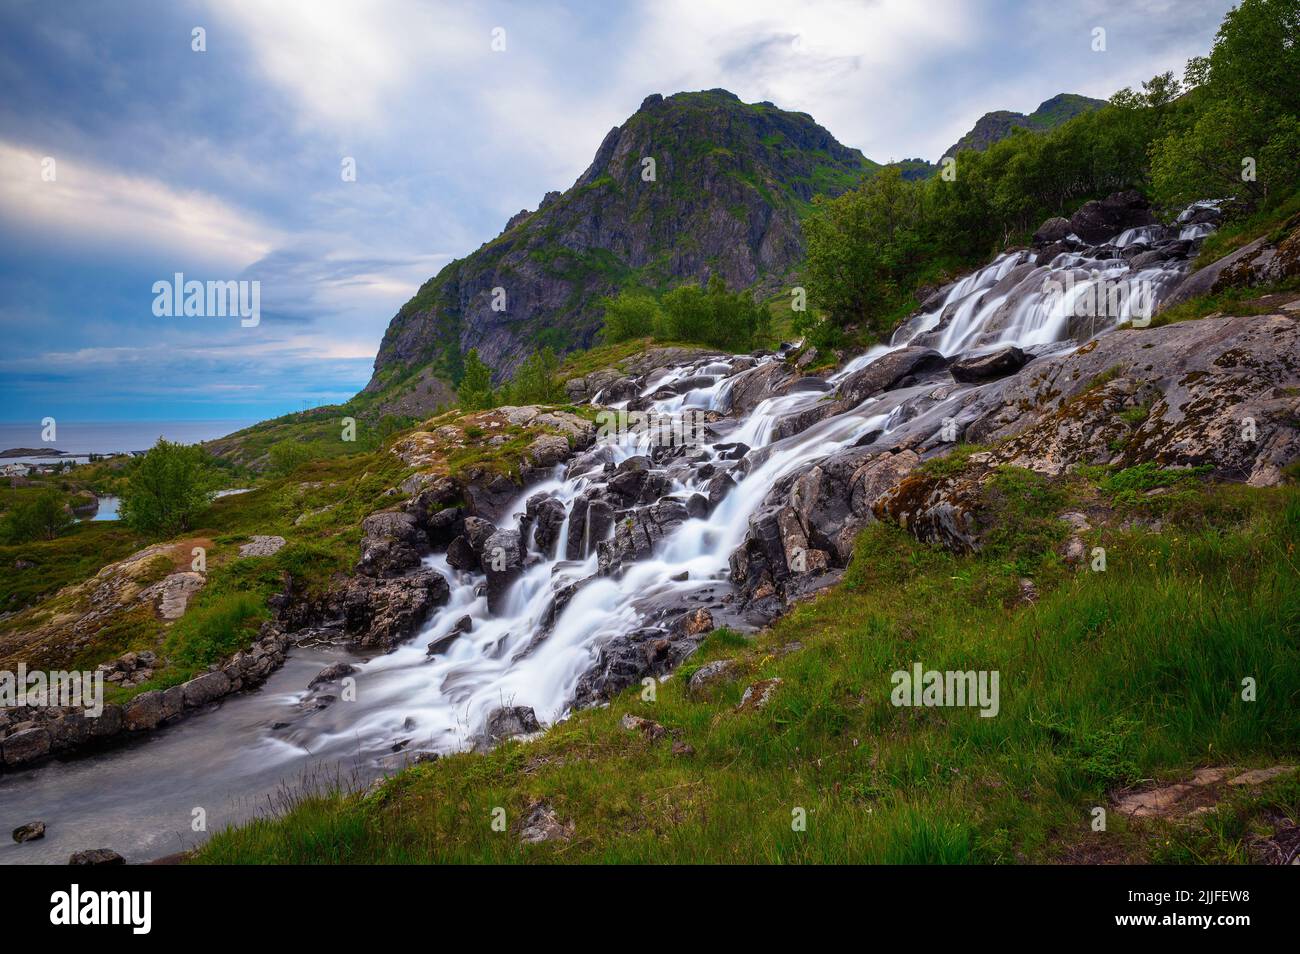 Lofoten waterfall on Moskenesoya, Lofoten, Norway Stock Photo